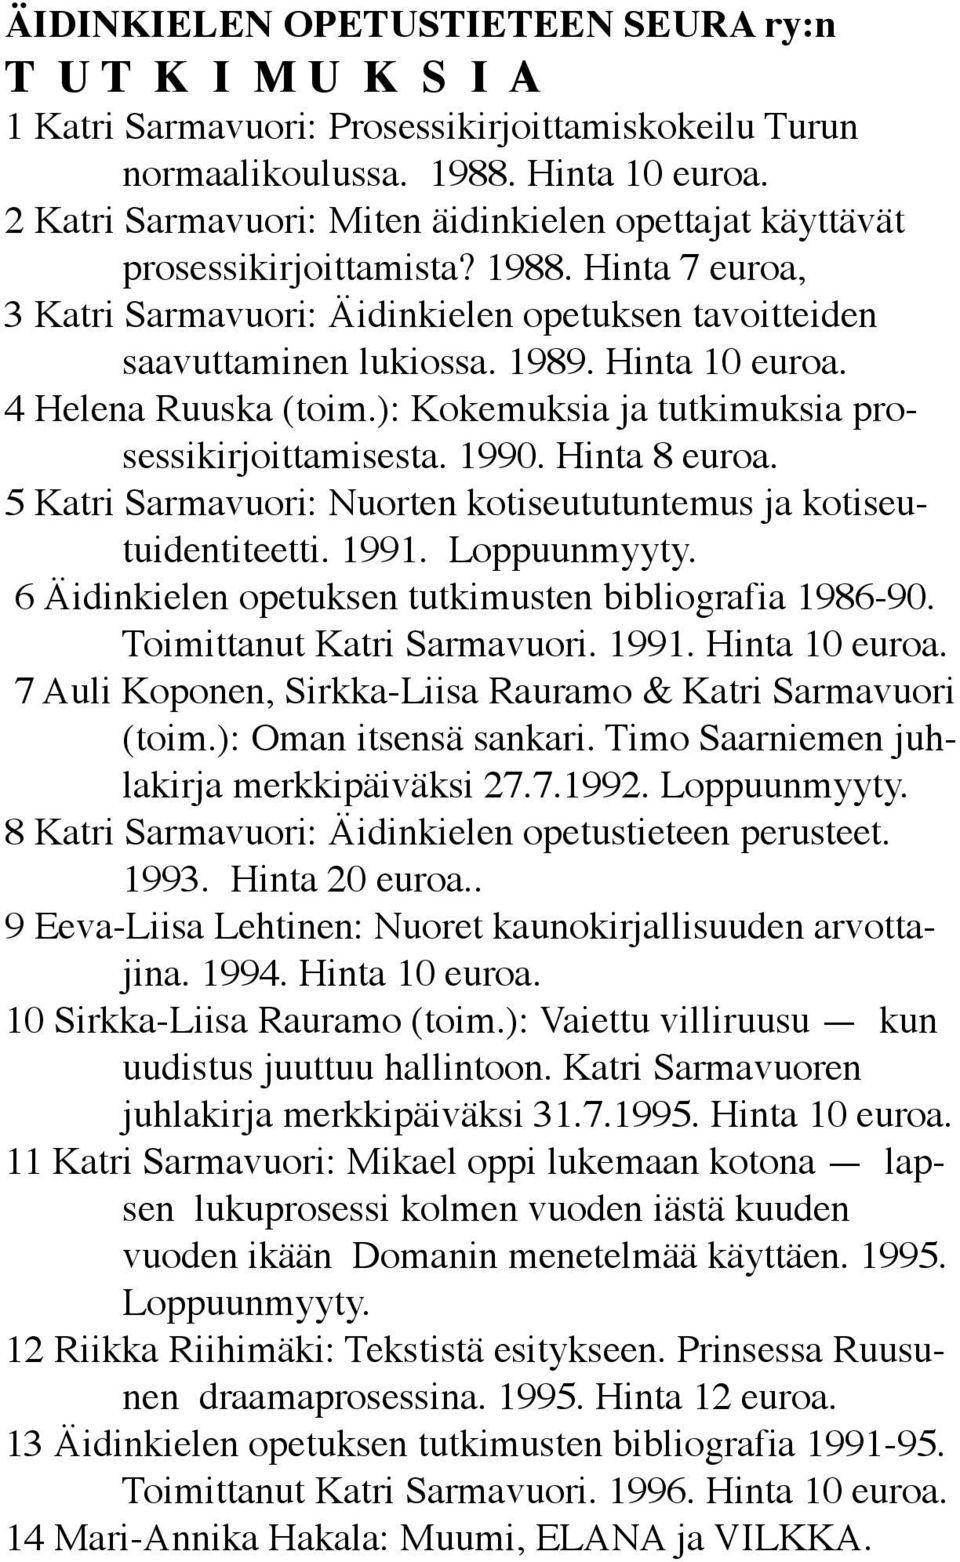 4 Helena Ruuska (toim.): Kokemuksia ja tutkimuksia prosessikirjoittamisesta. 990. Hinta 8 euroa. 5 Katri Sarmavuori: Nuorten kotiseututuntemus ja kotiseutuidentiteetti. 99. Loppuunmyyty.